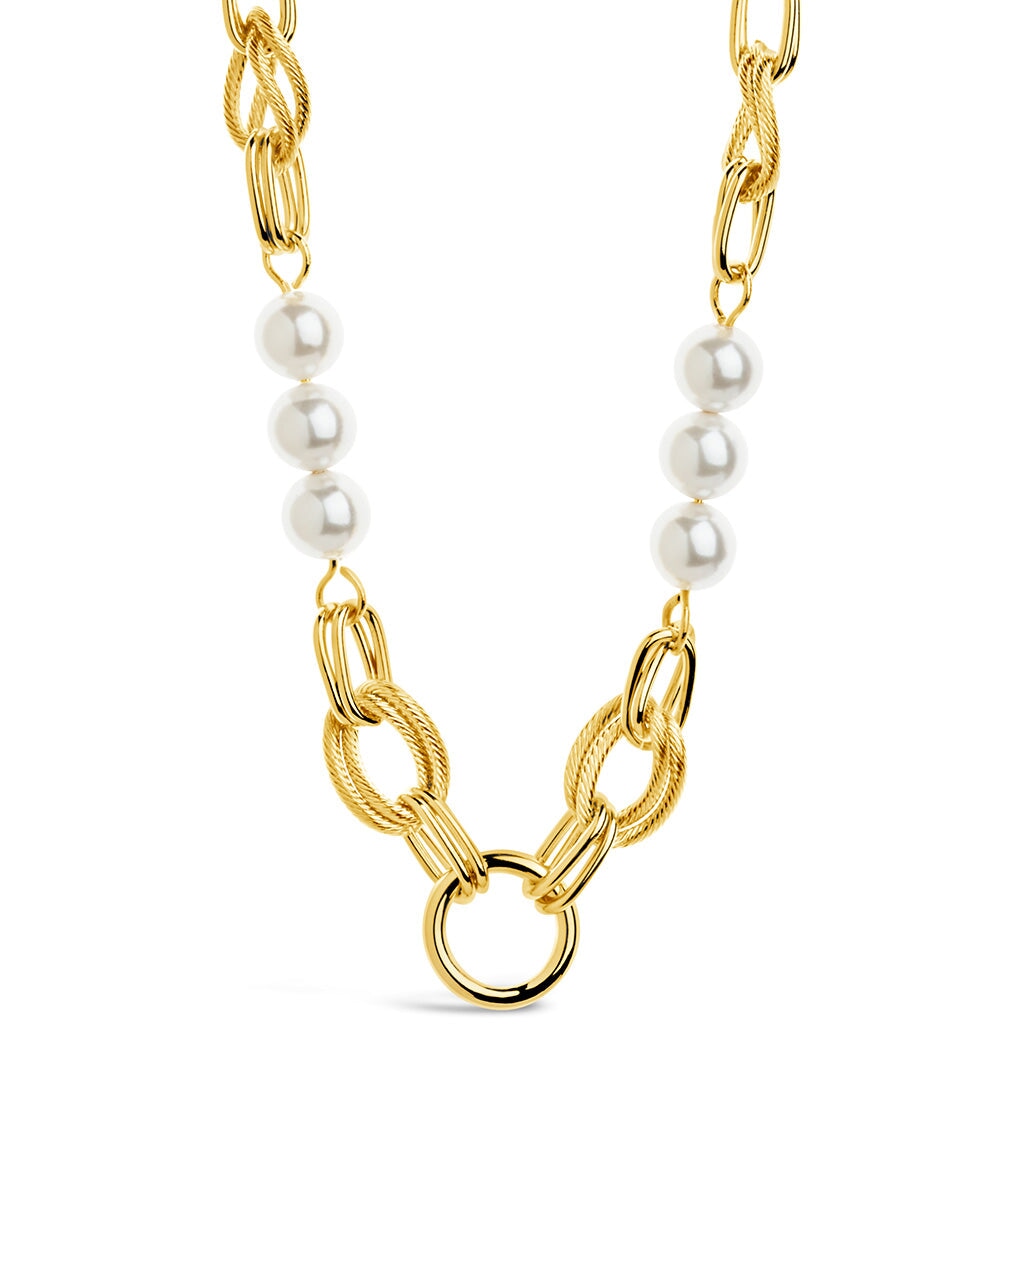 Ivanna Pearl Necklace Bracelet Sterling Forever Gold 